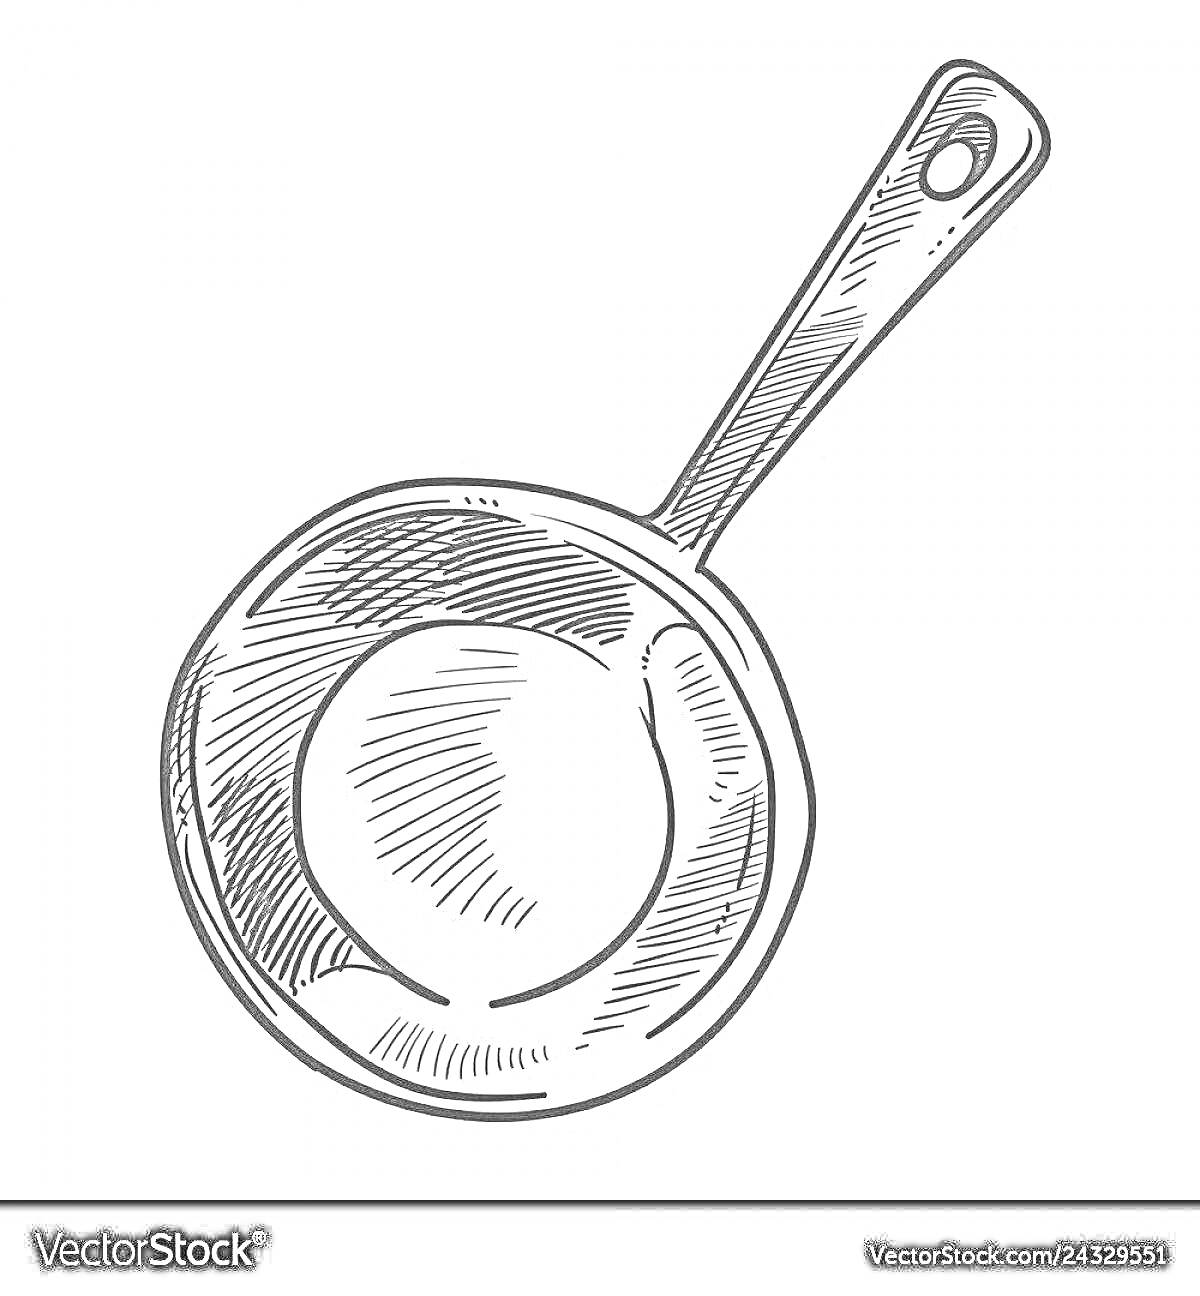 Раскраска Рисунок половника с круглой чашей и ручкой с отверстием